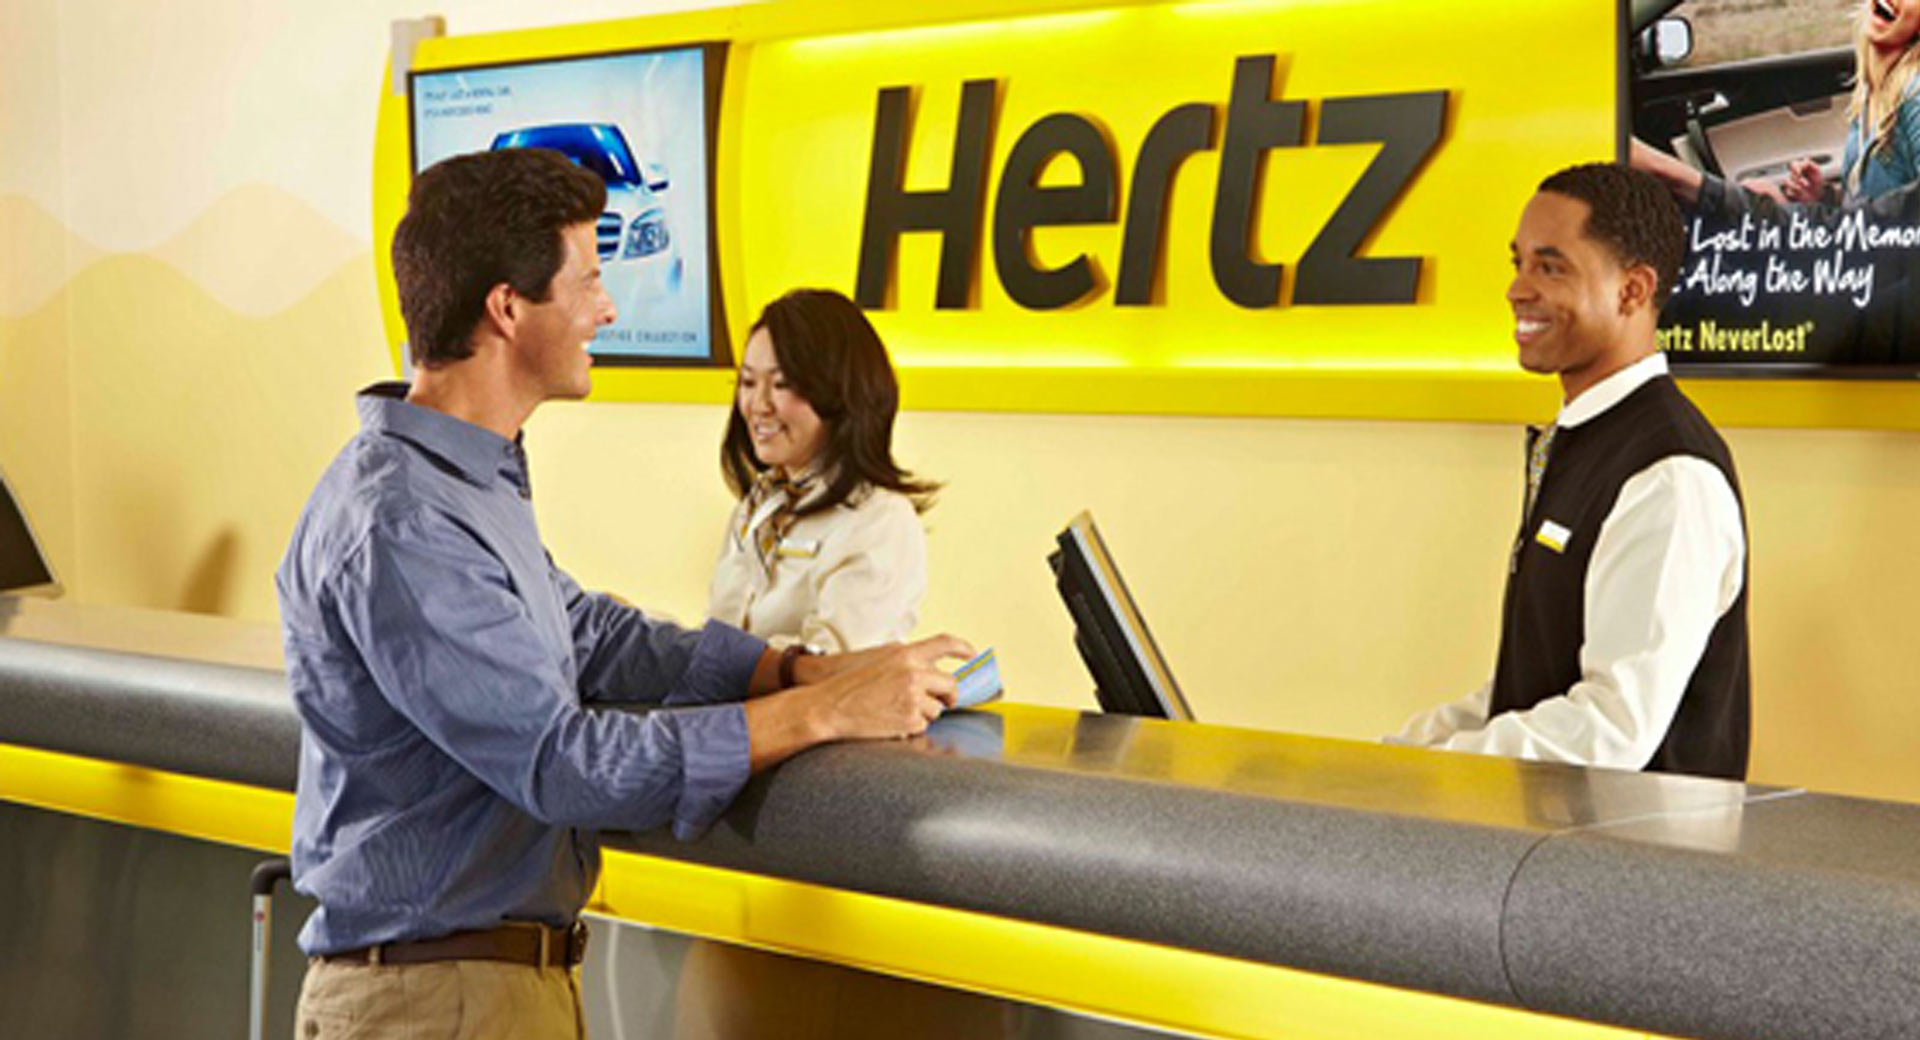 Hertz 1 - Auto Recent